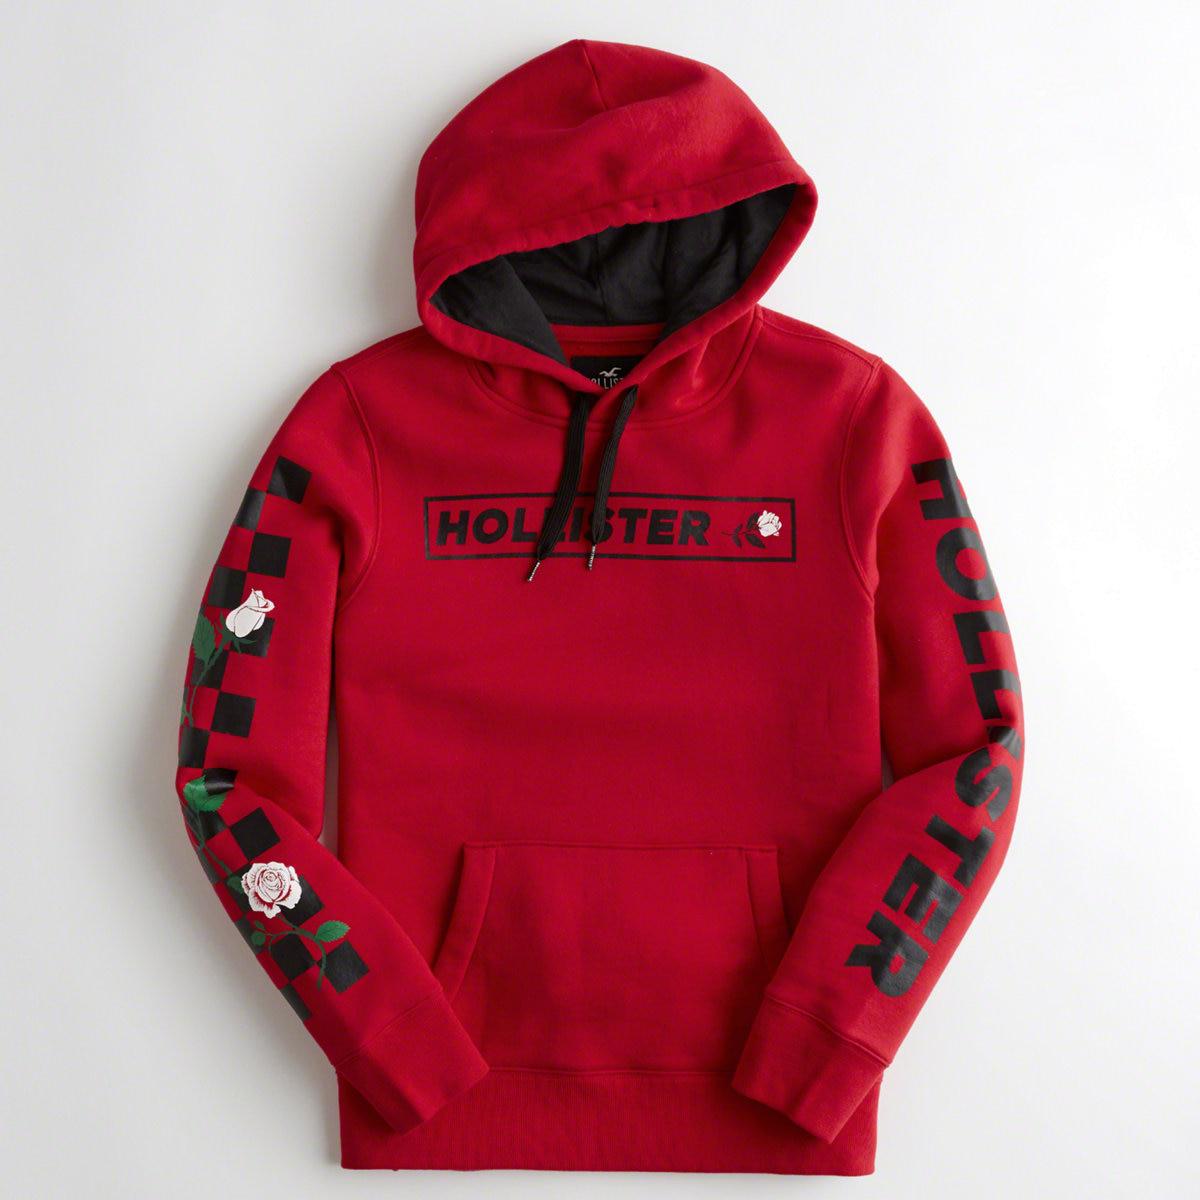 rose hollister hoodie